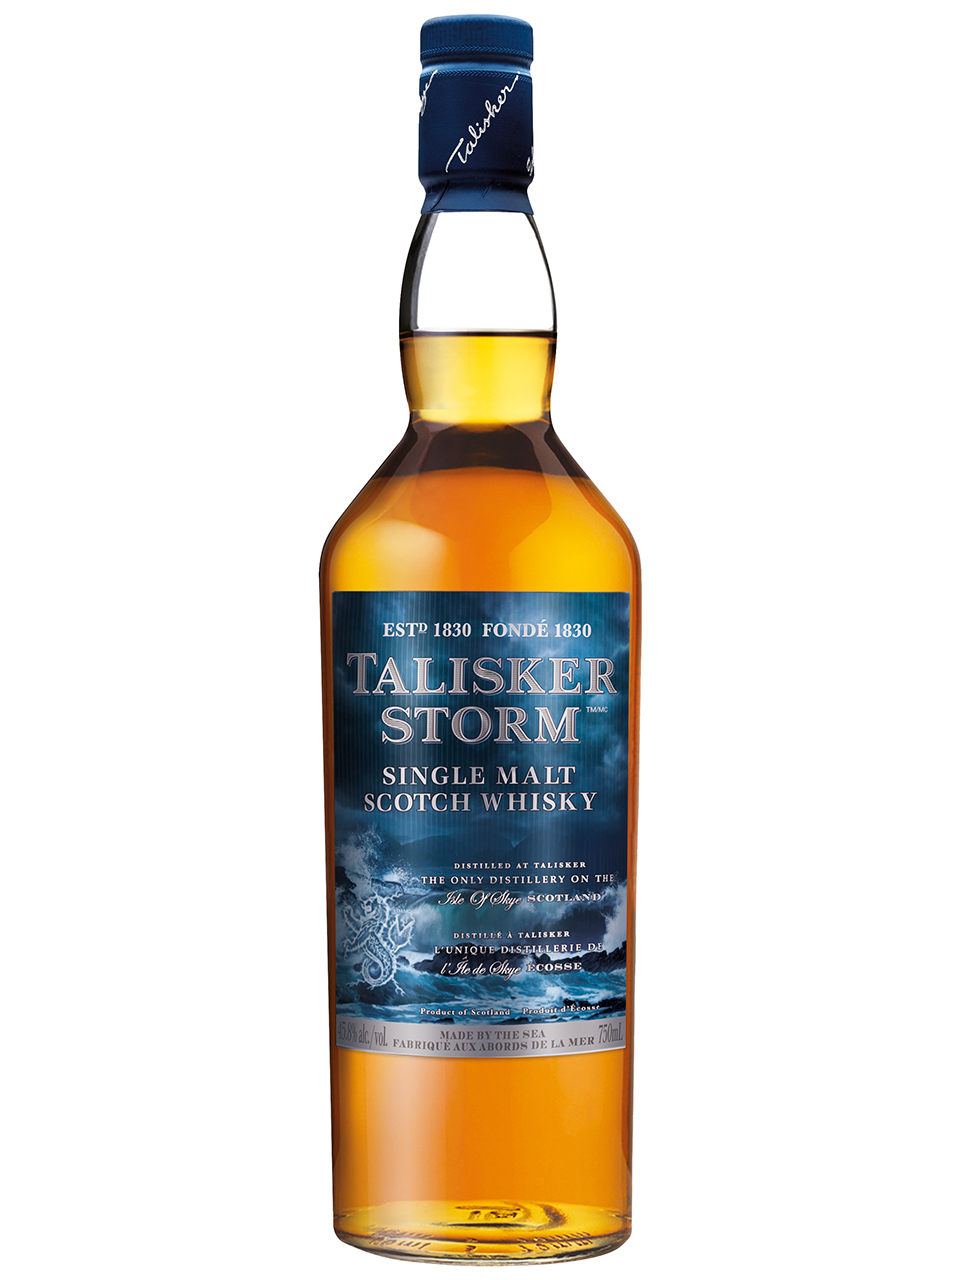 Talisker Storm Single Malt Scotch Whisky